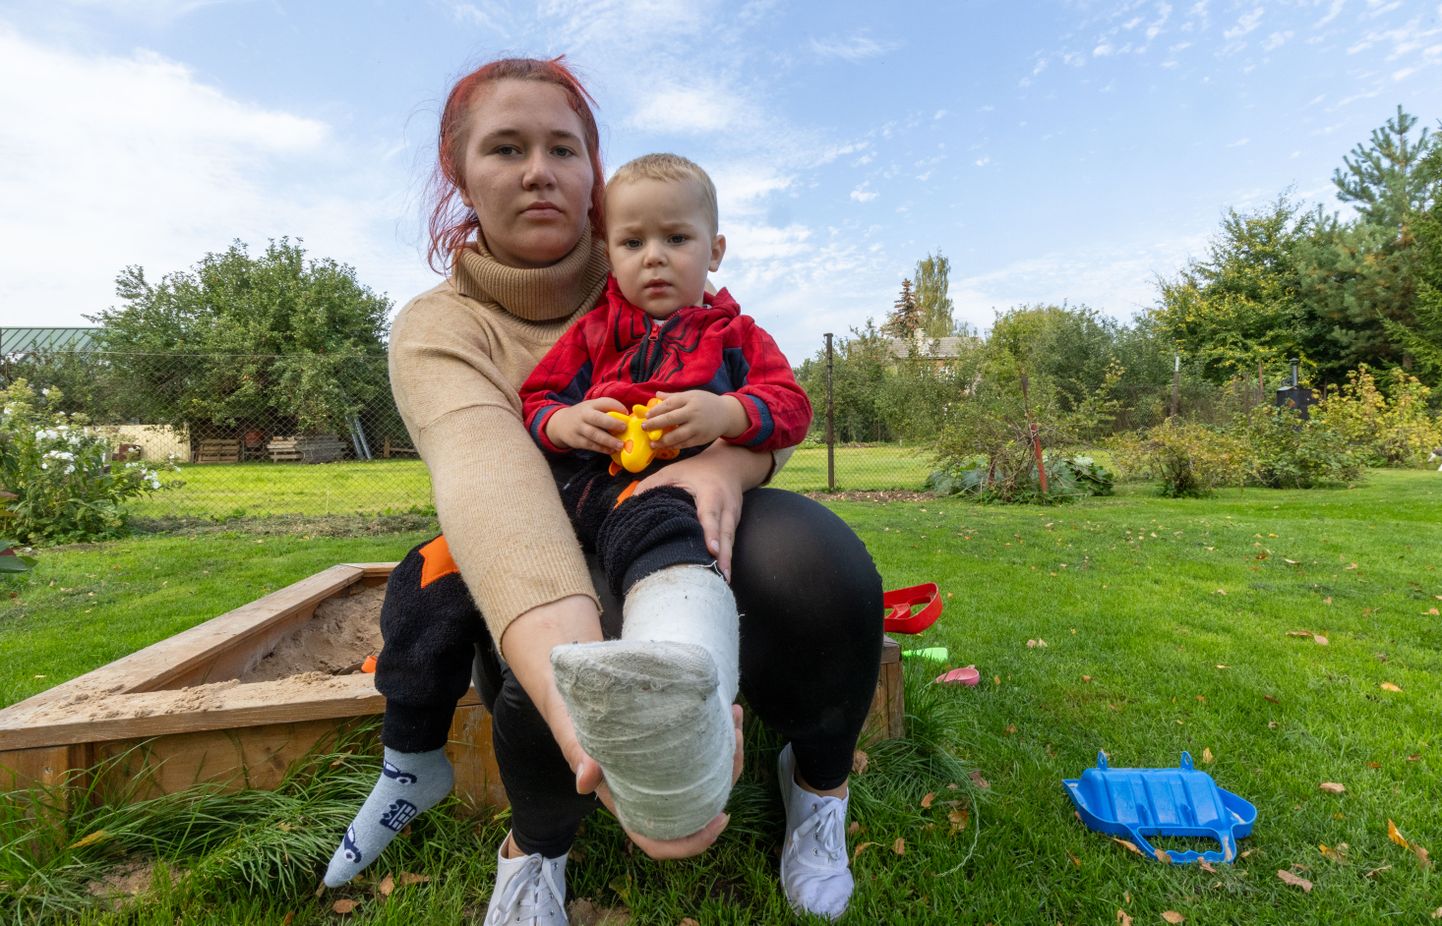 Annika Ärtis koos oma kahe aastase pojaga kaks päeva pärast juhtunud.